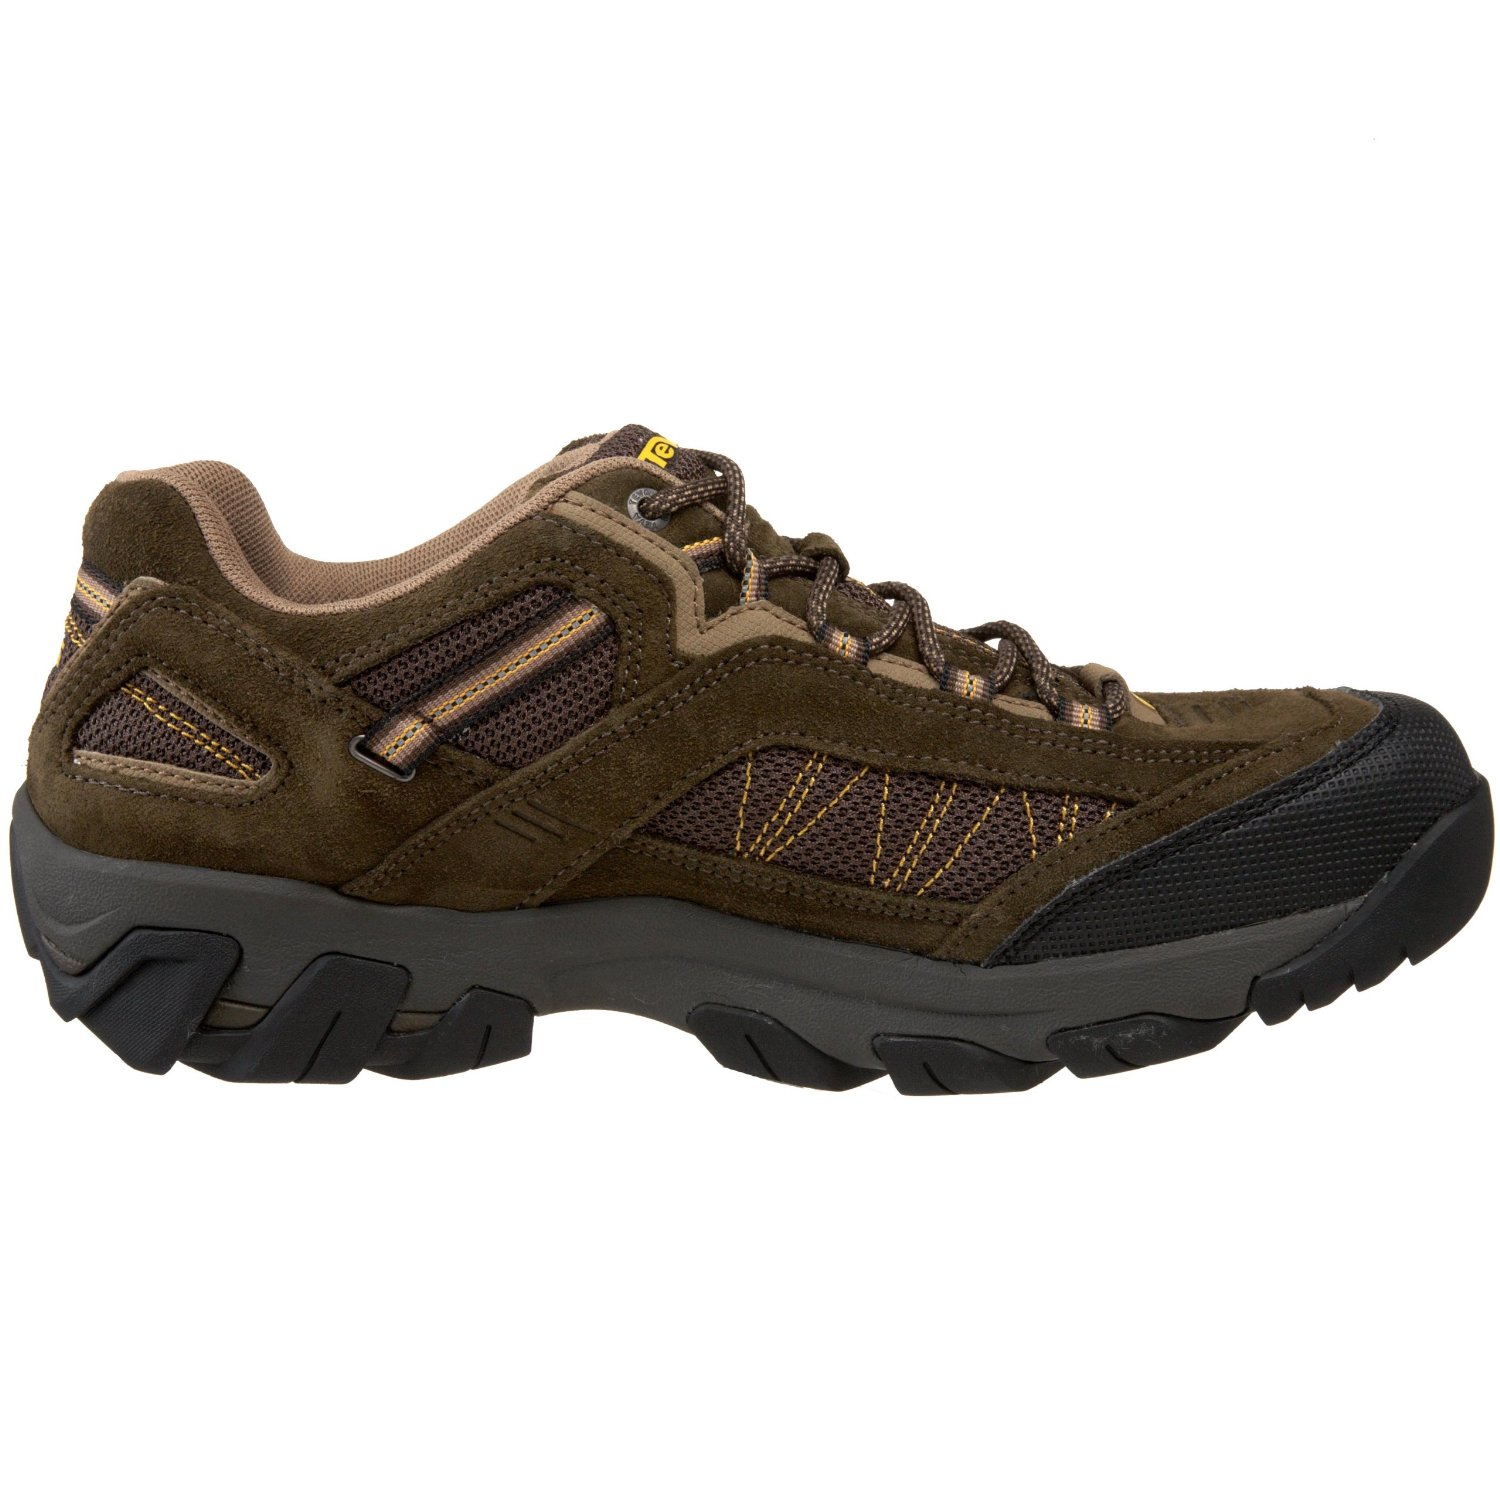 Hiking Shoes Here: Teva Men's Verdon Light Hiking Shoe,Tarmac,13 M US